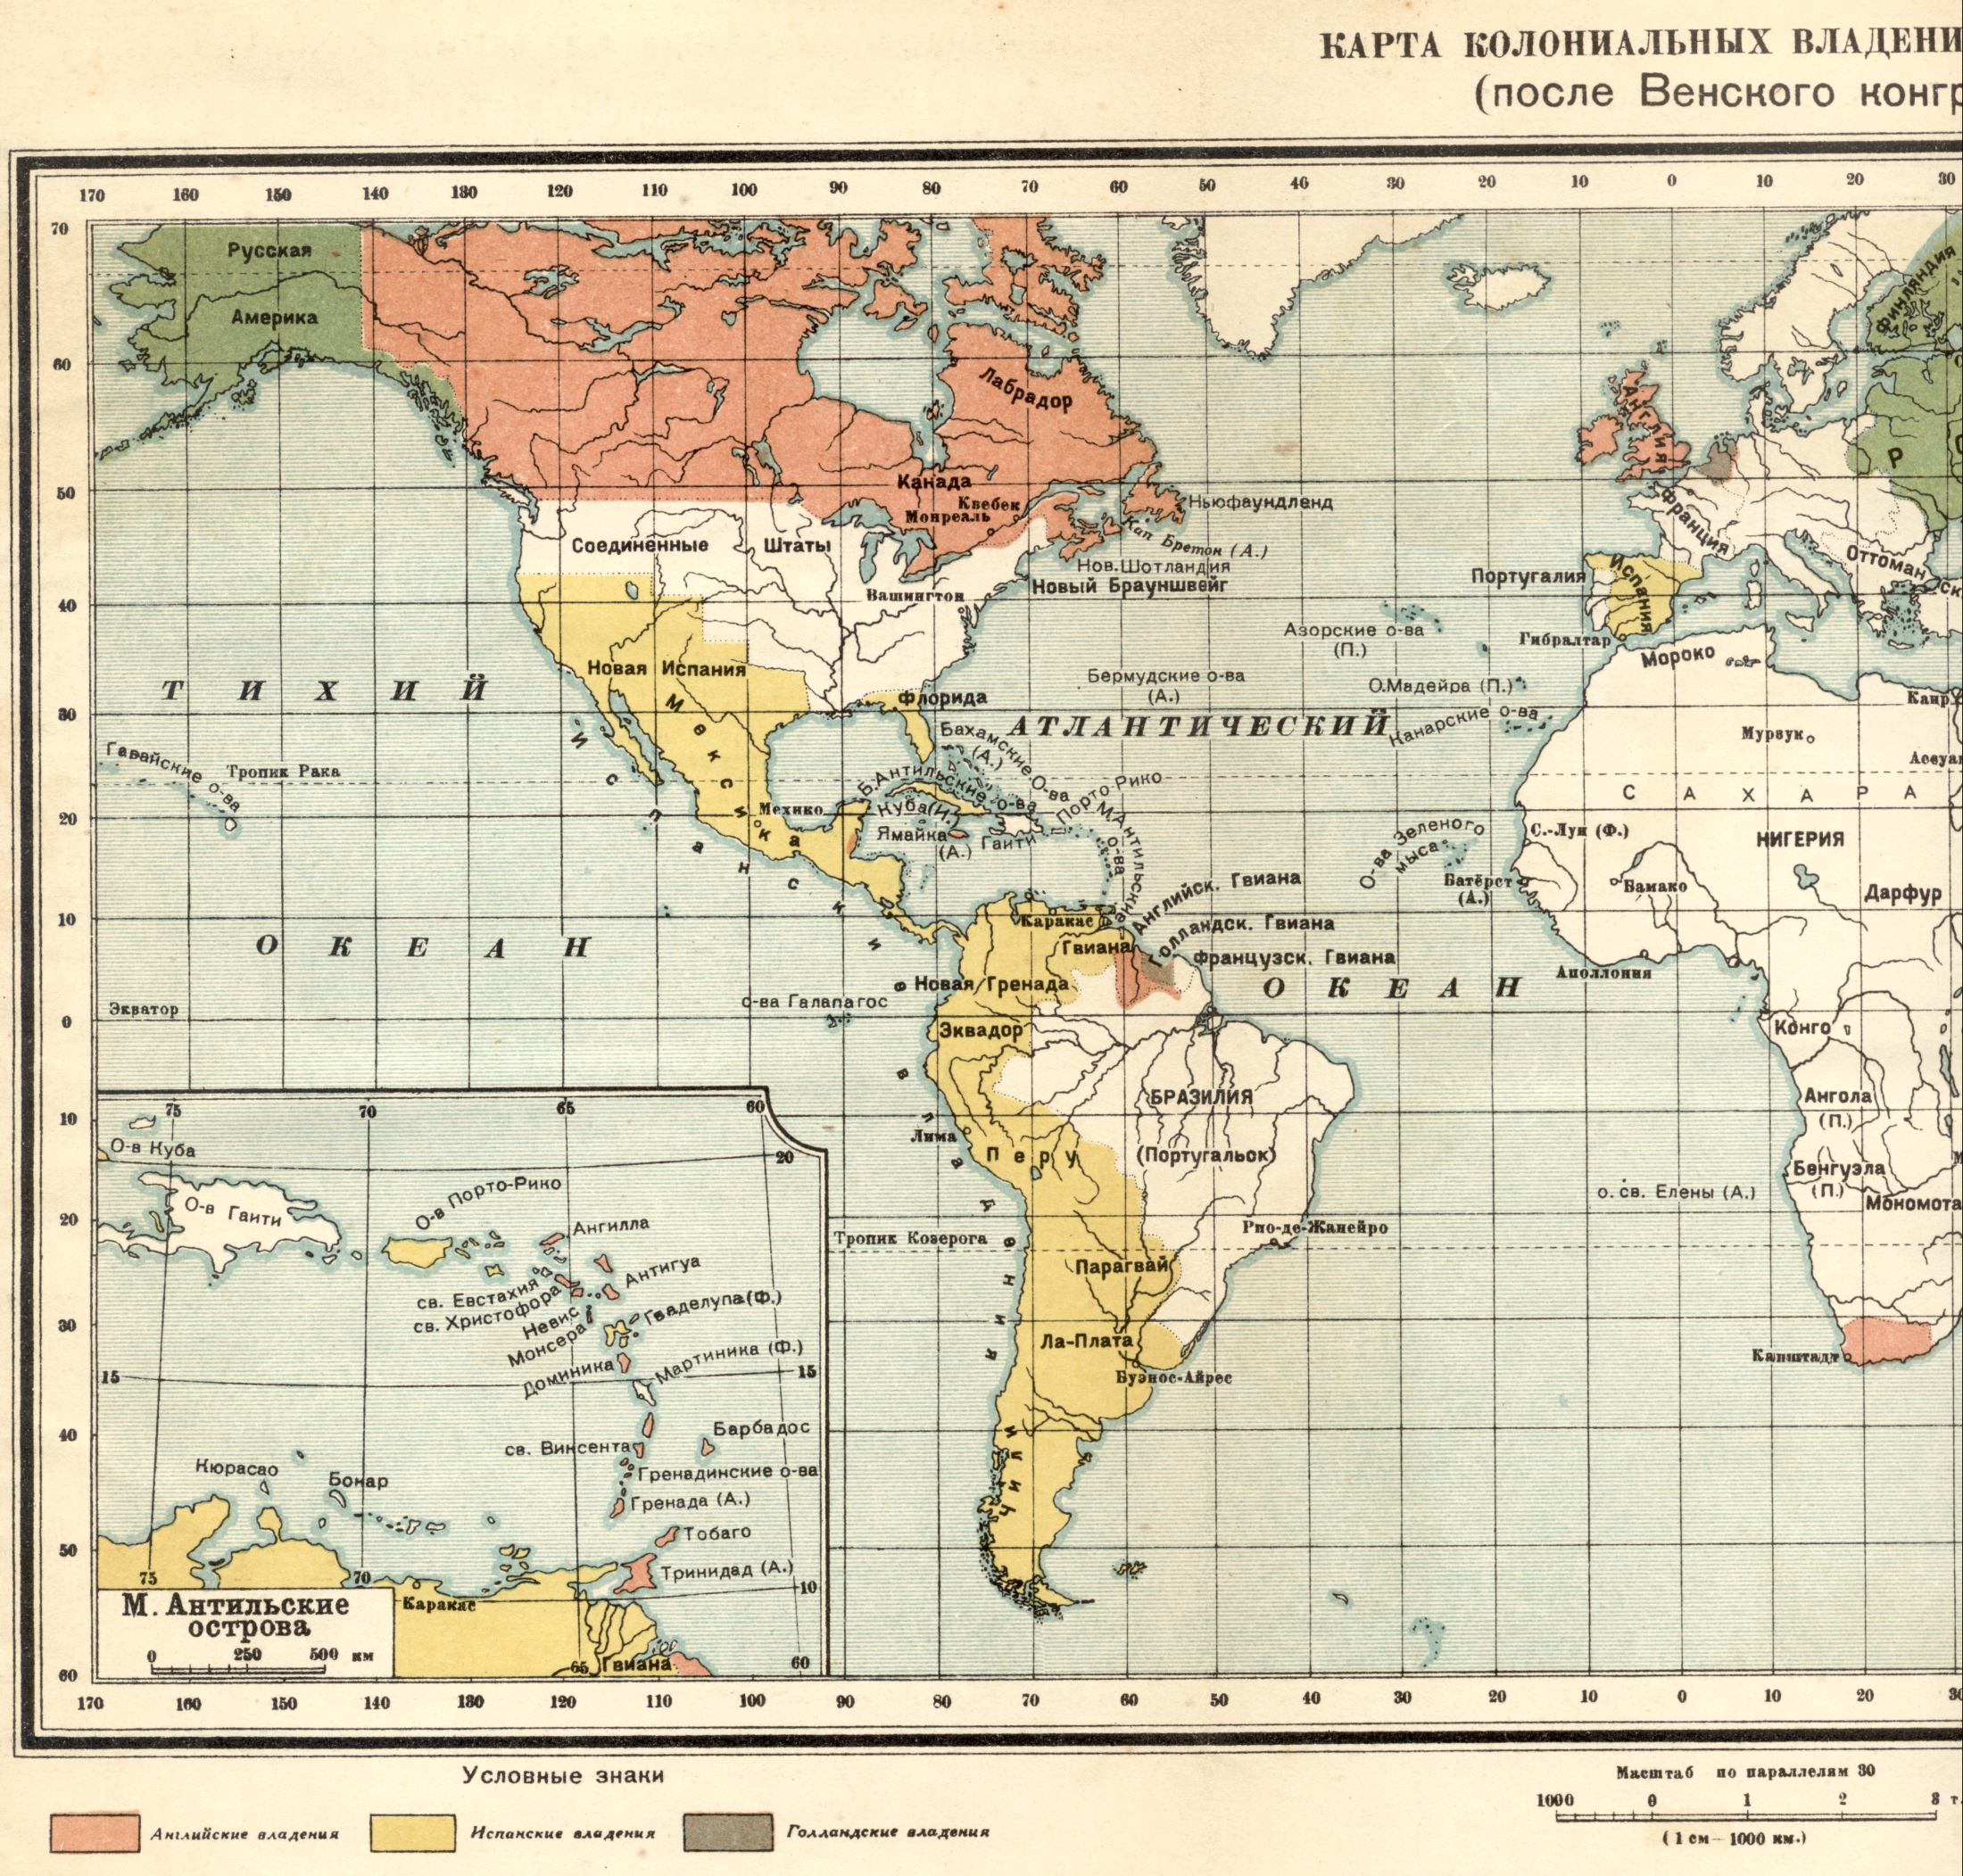 1815. Die politische Weltkarte - Karte von Kolonialbesitz im Jahre 1815 nach dem Wiener Kongress. Laden Sie eine detaillierte Karte